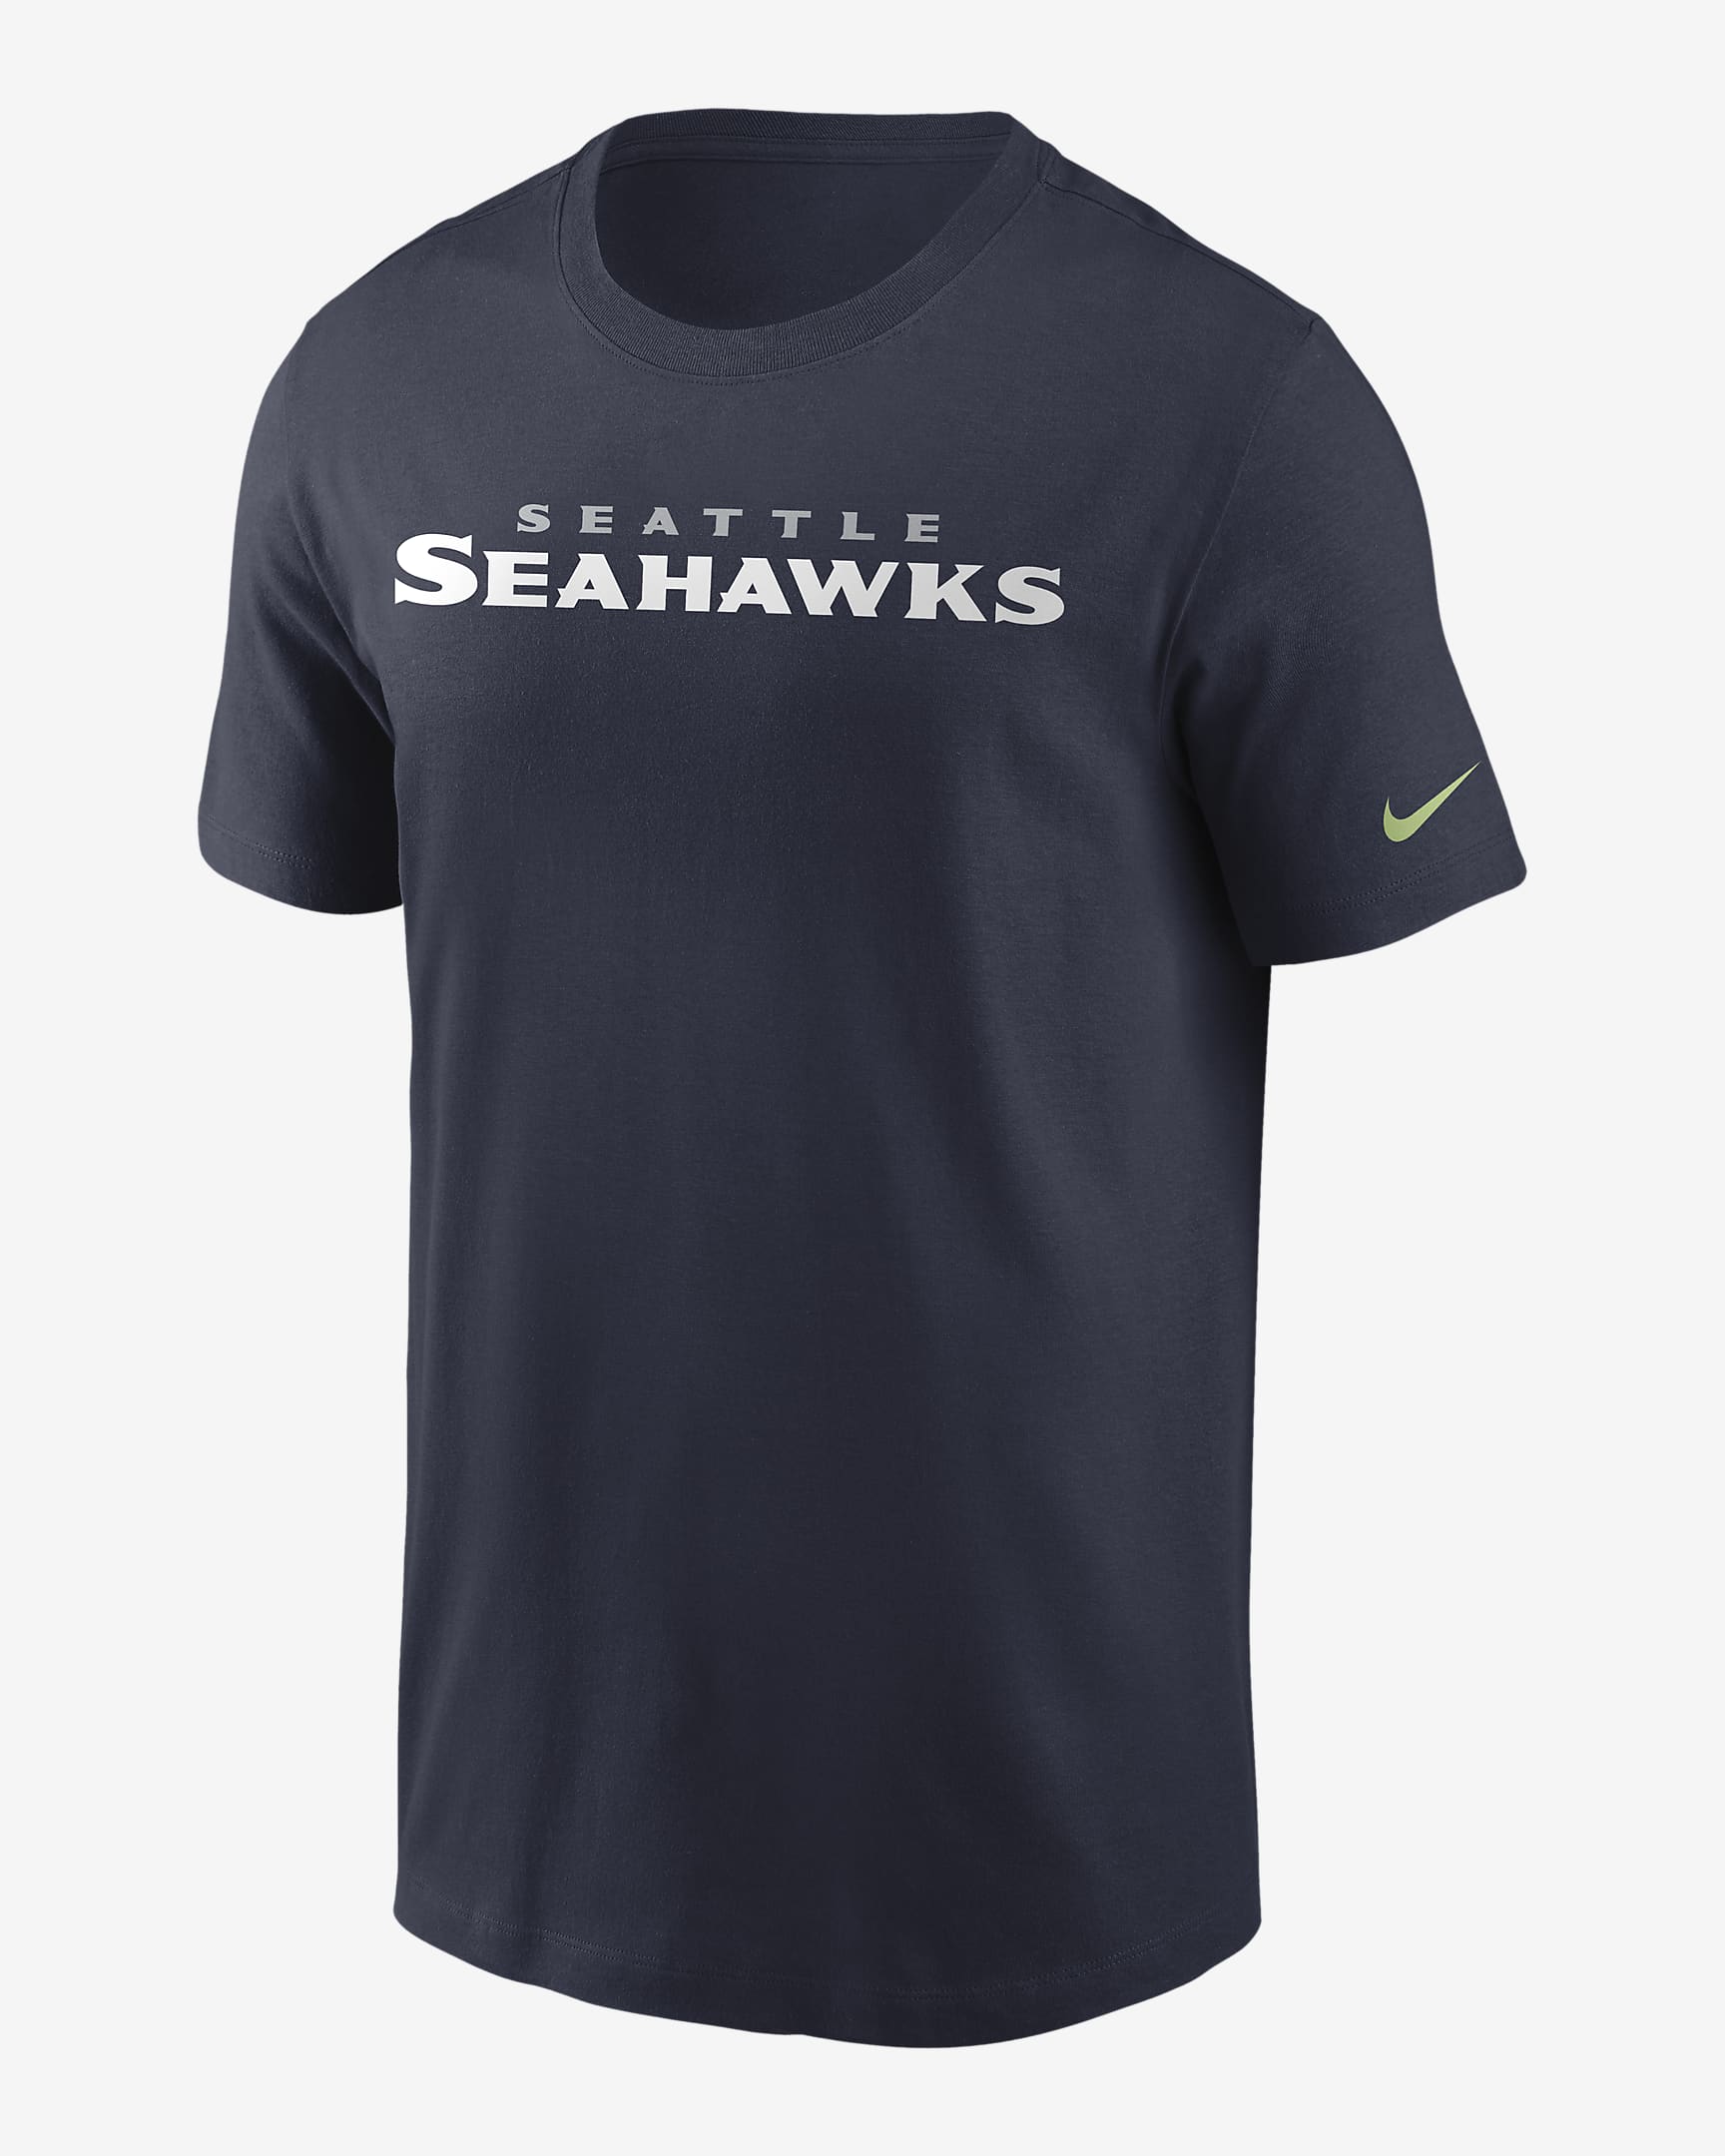 Nike (NFL Seattle Seahawks) Men's T-Shirt. Nike.com